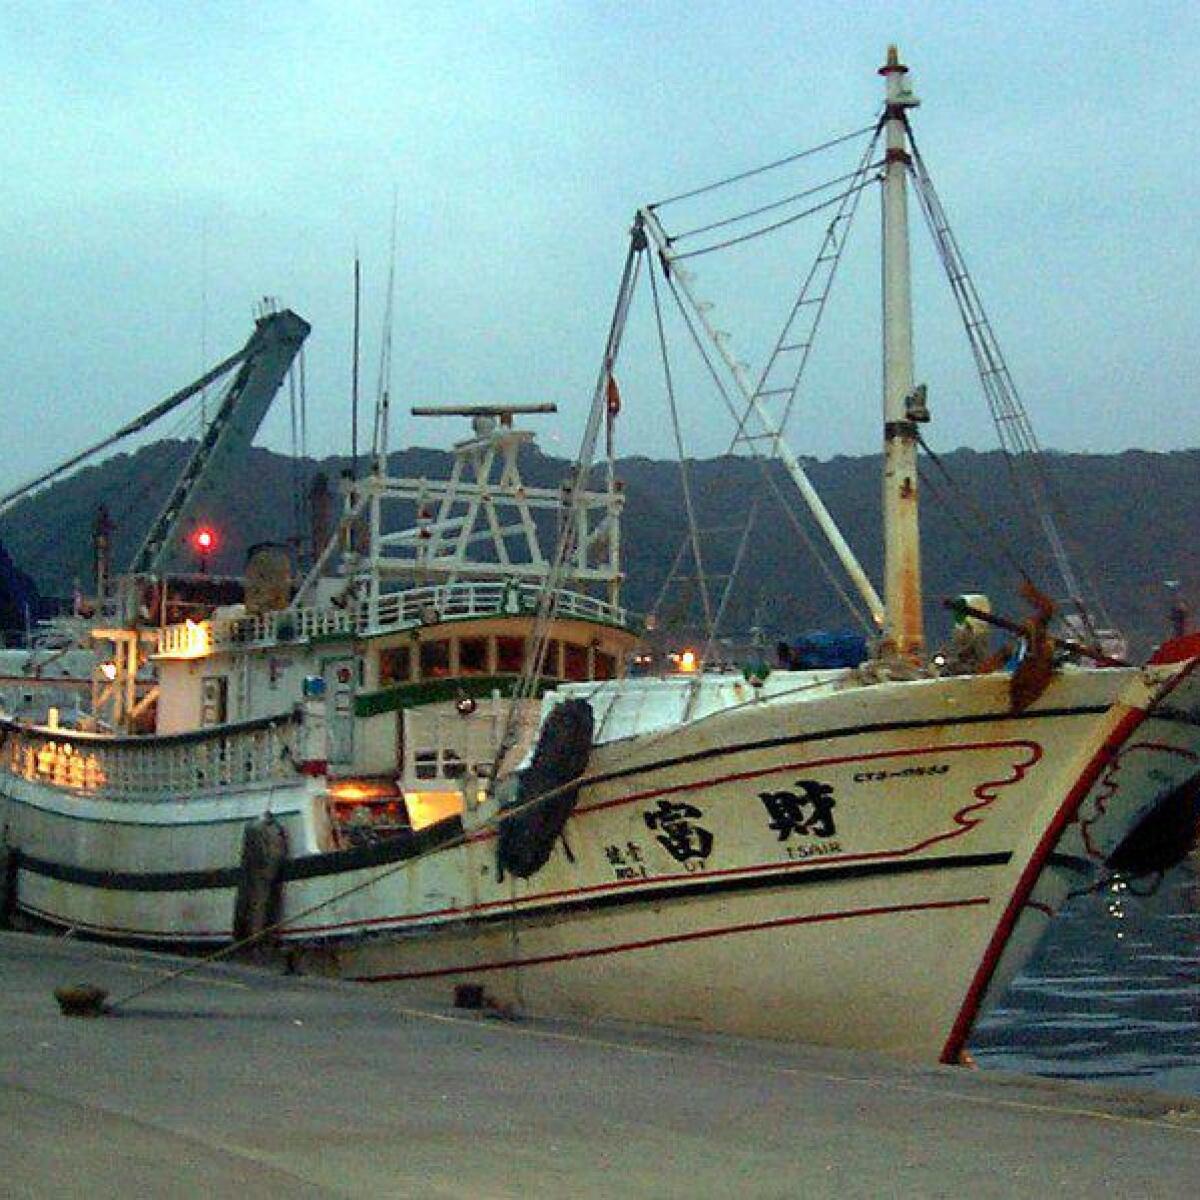 A Taiwanese fishing boat